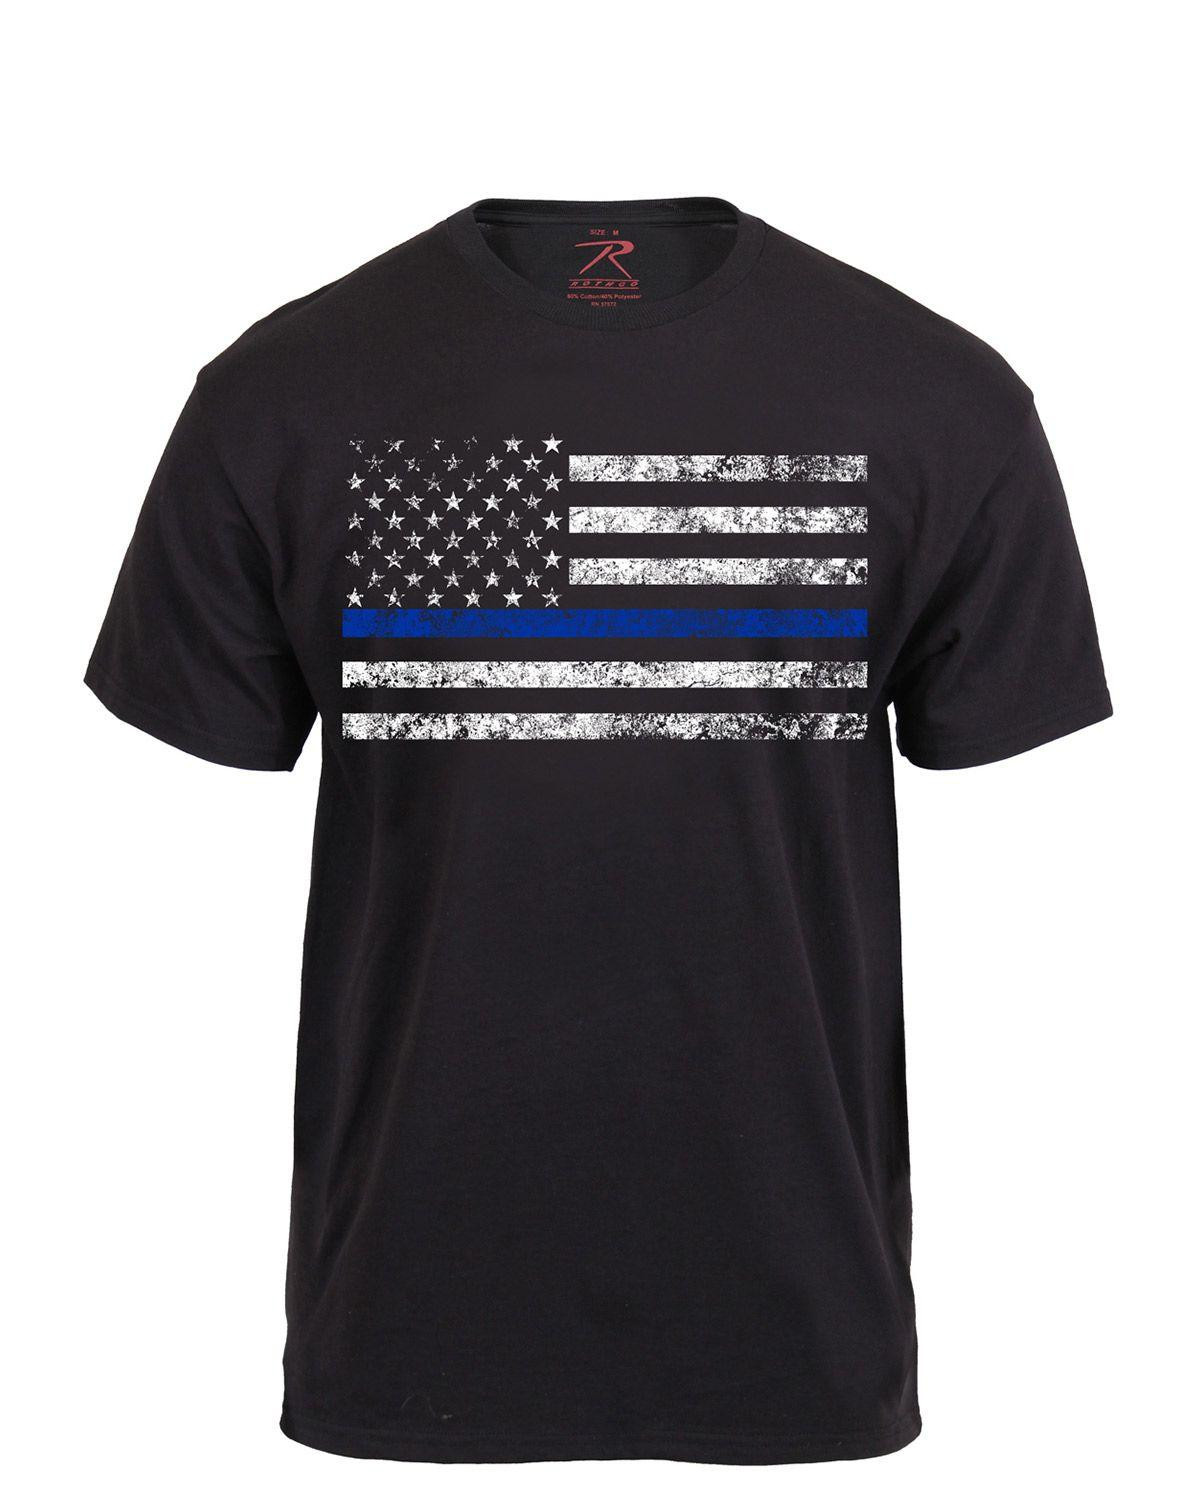 Rothco T-Shirt - Thin Blue Line (Sort, L)